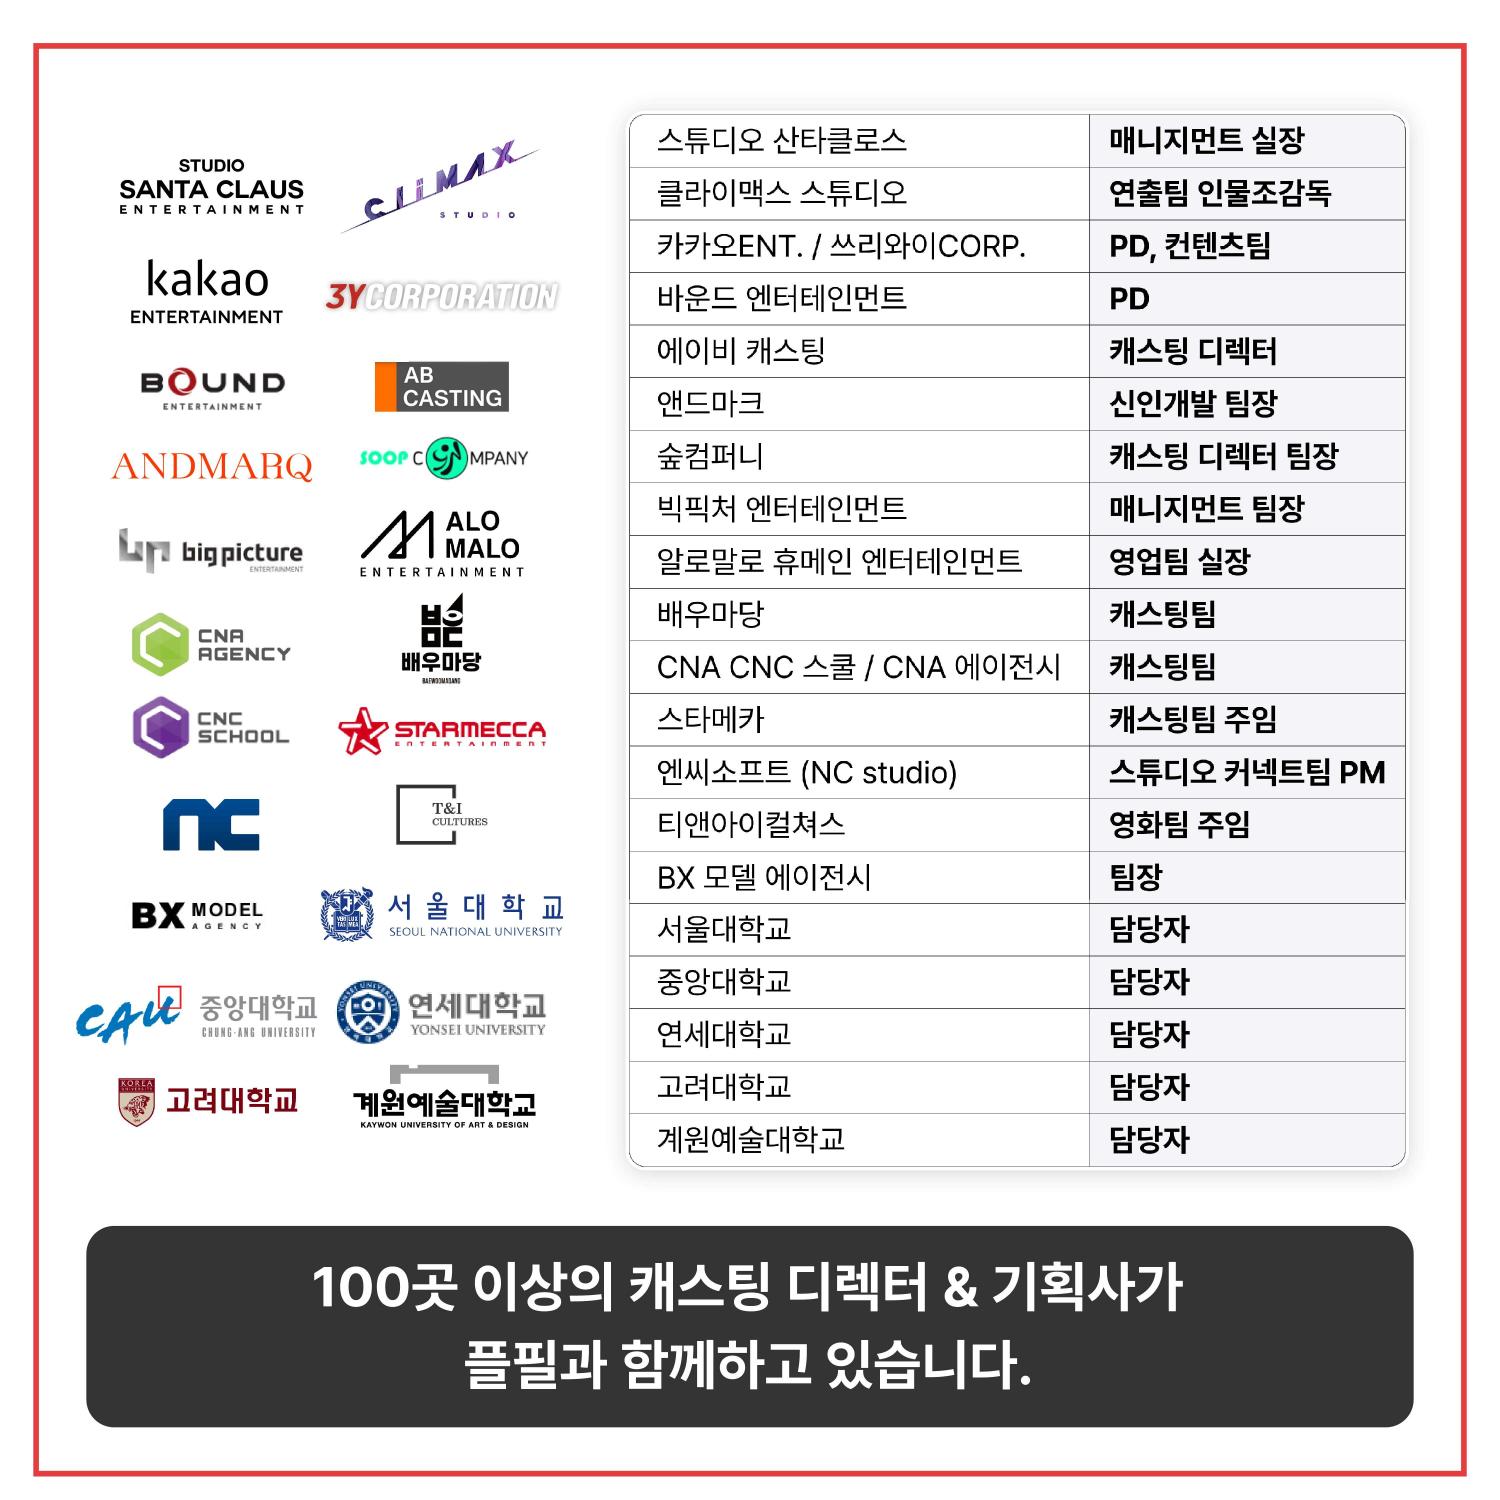 100개 기업 등록_광고_d_어썸수정_용량저하.jpg